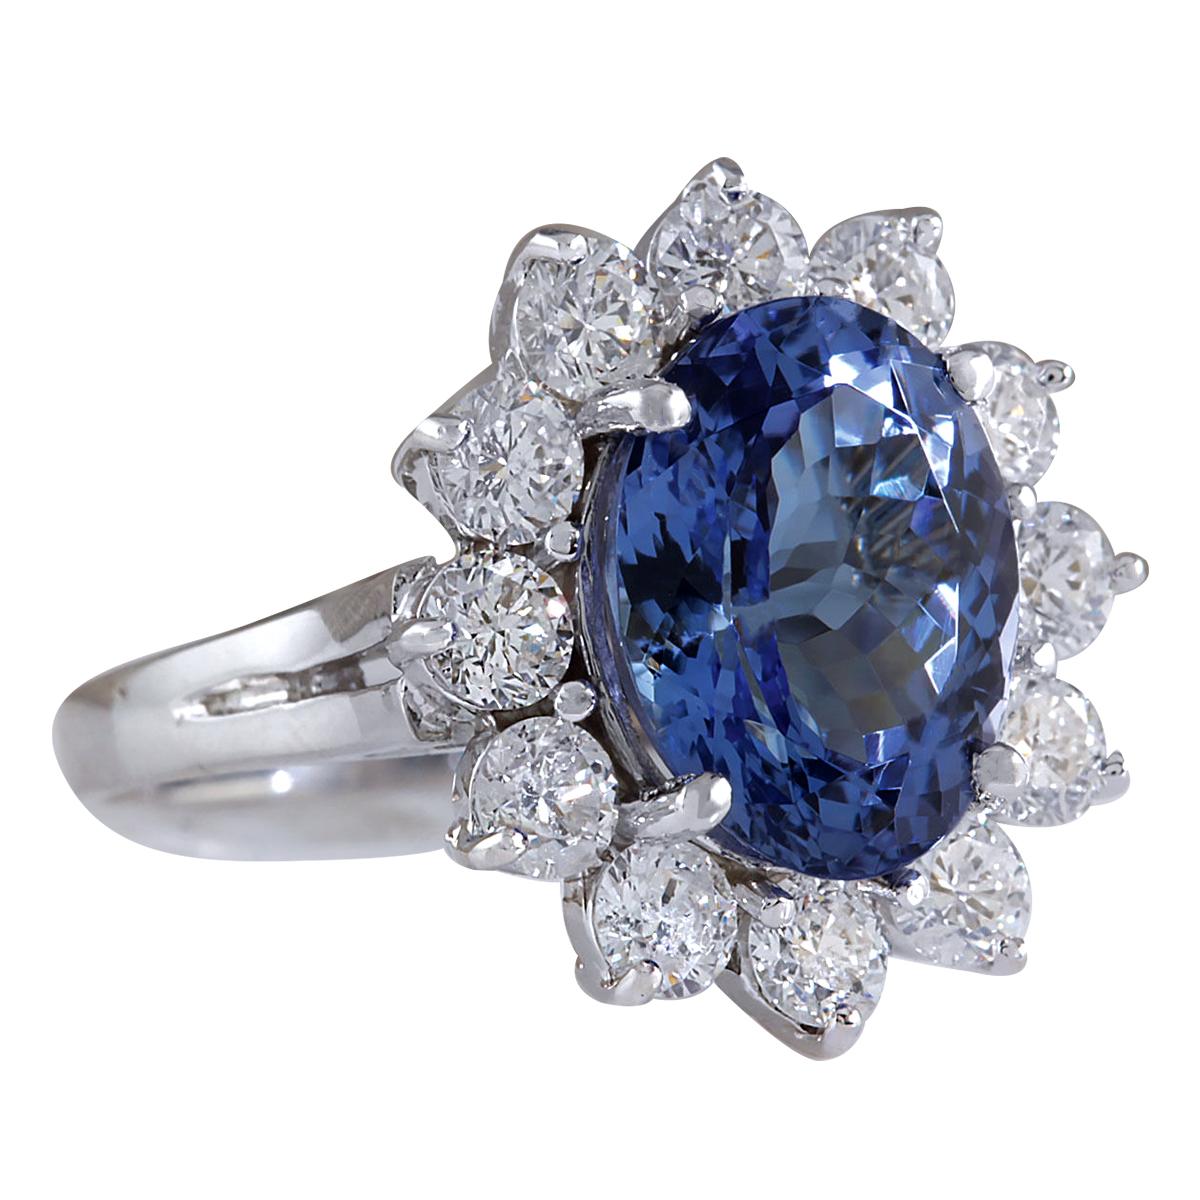 6.35 Carat Tanzanite 14 Karat White Gold Diamond Ring
Stamped: 14K White Gold
Total Ring Weight: 5.0 Grams
Total  Tanzanite Weight is 4.74 Carat (Measures: 12.00x10.00 mm)
Color: Blue
Total  Diamond Weight is 1.61 Carat
Color: F-G, Clarity: